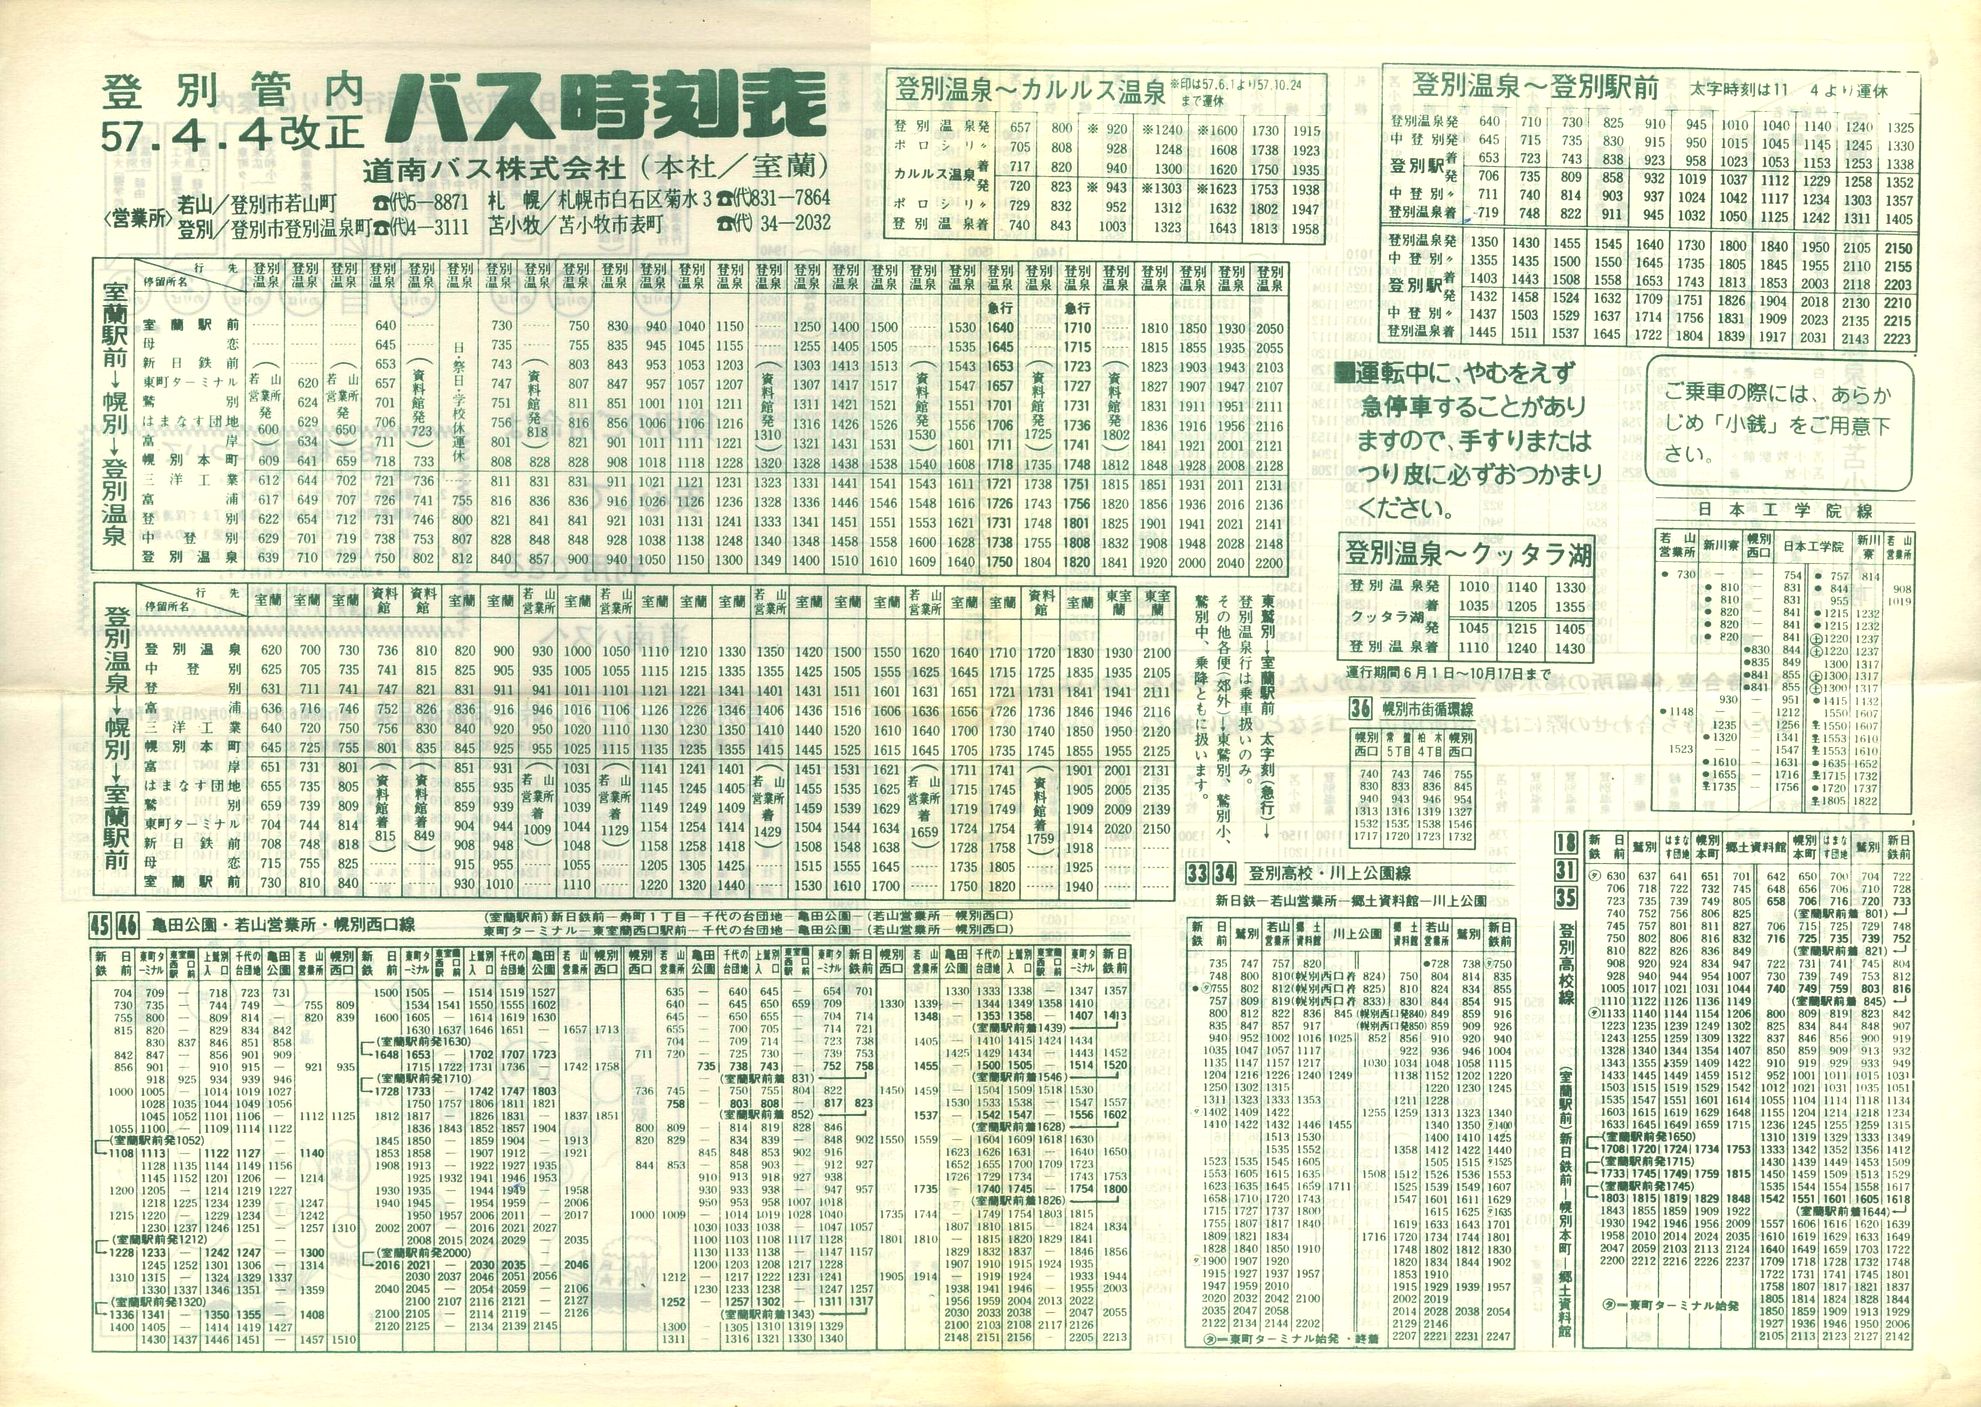 1982-04-04改正_道南バス_登別管内時刻表表面